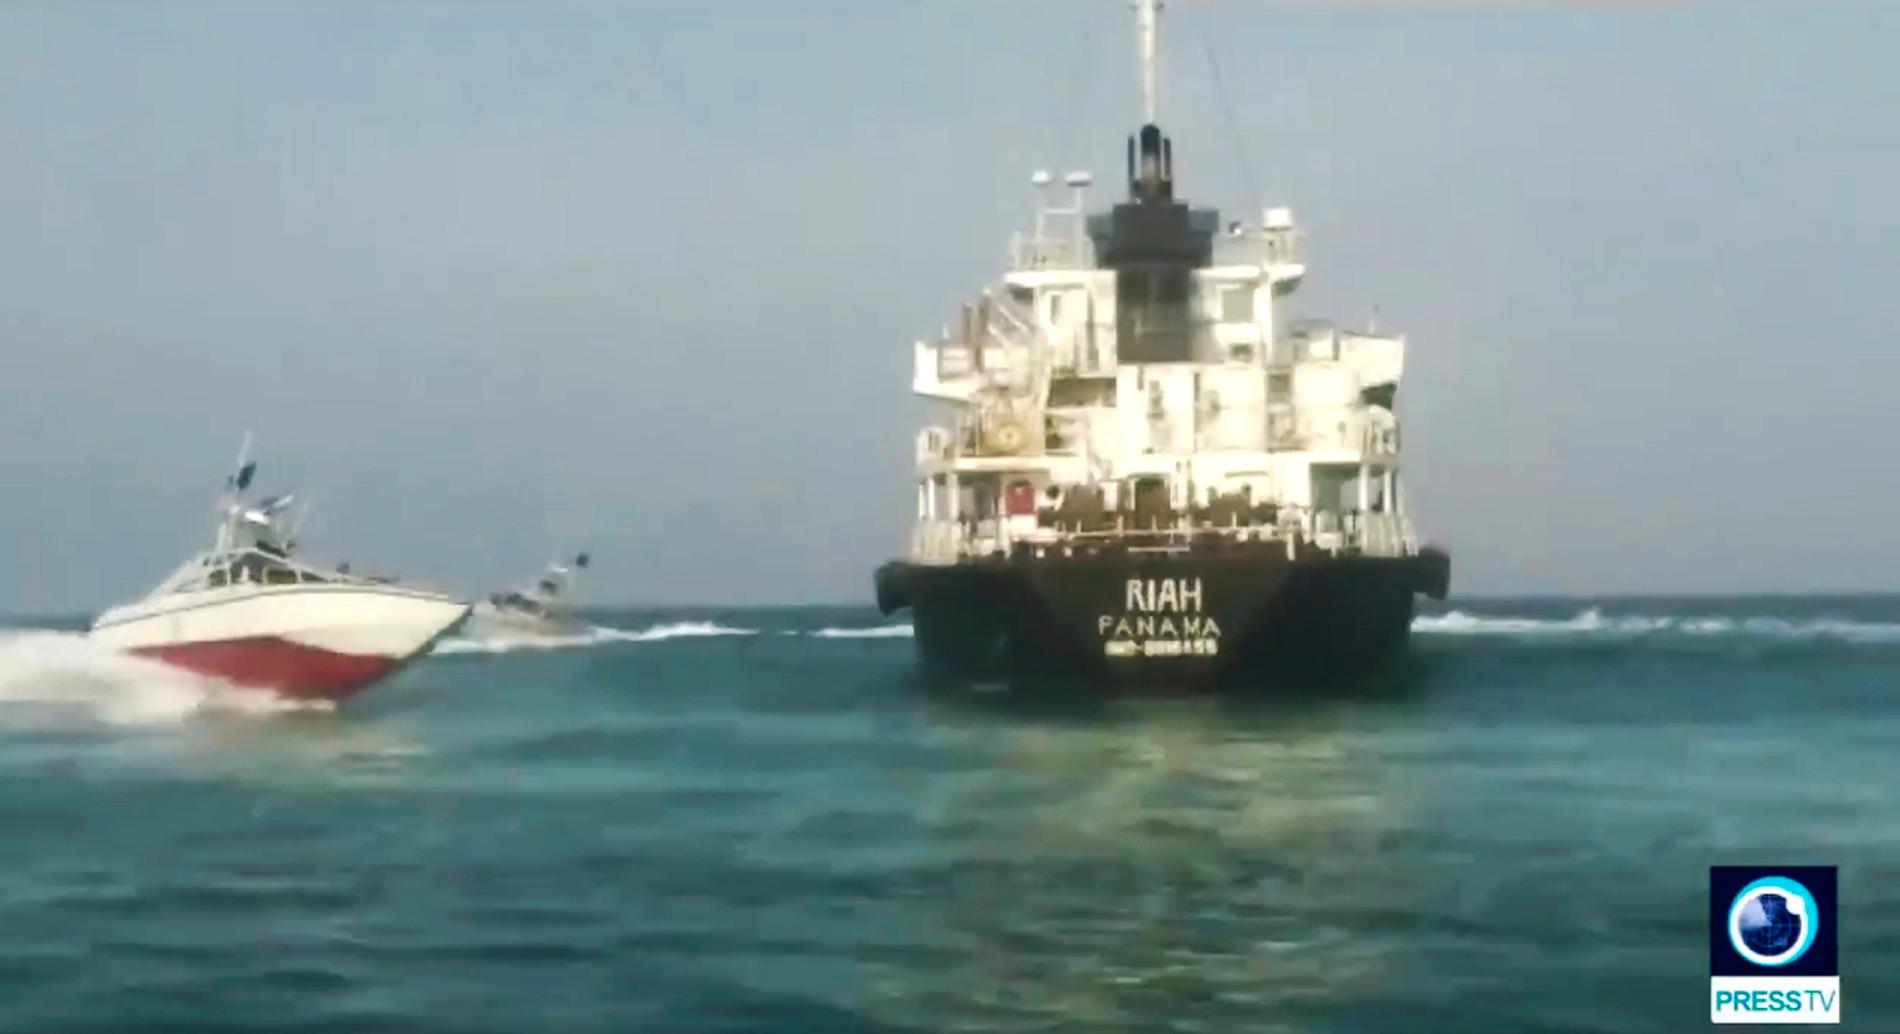 En bild publicerad i statlig iransk tv visar det beslagtagna fartyget.